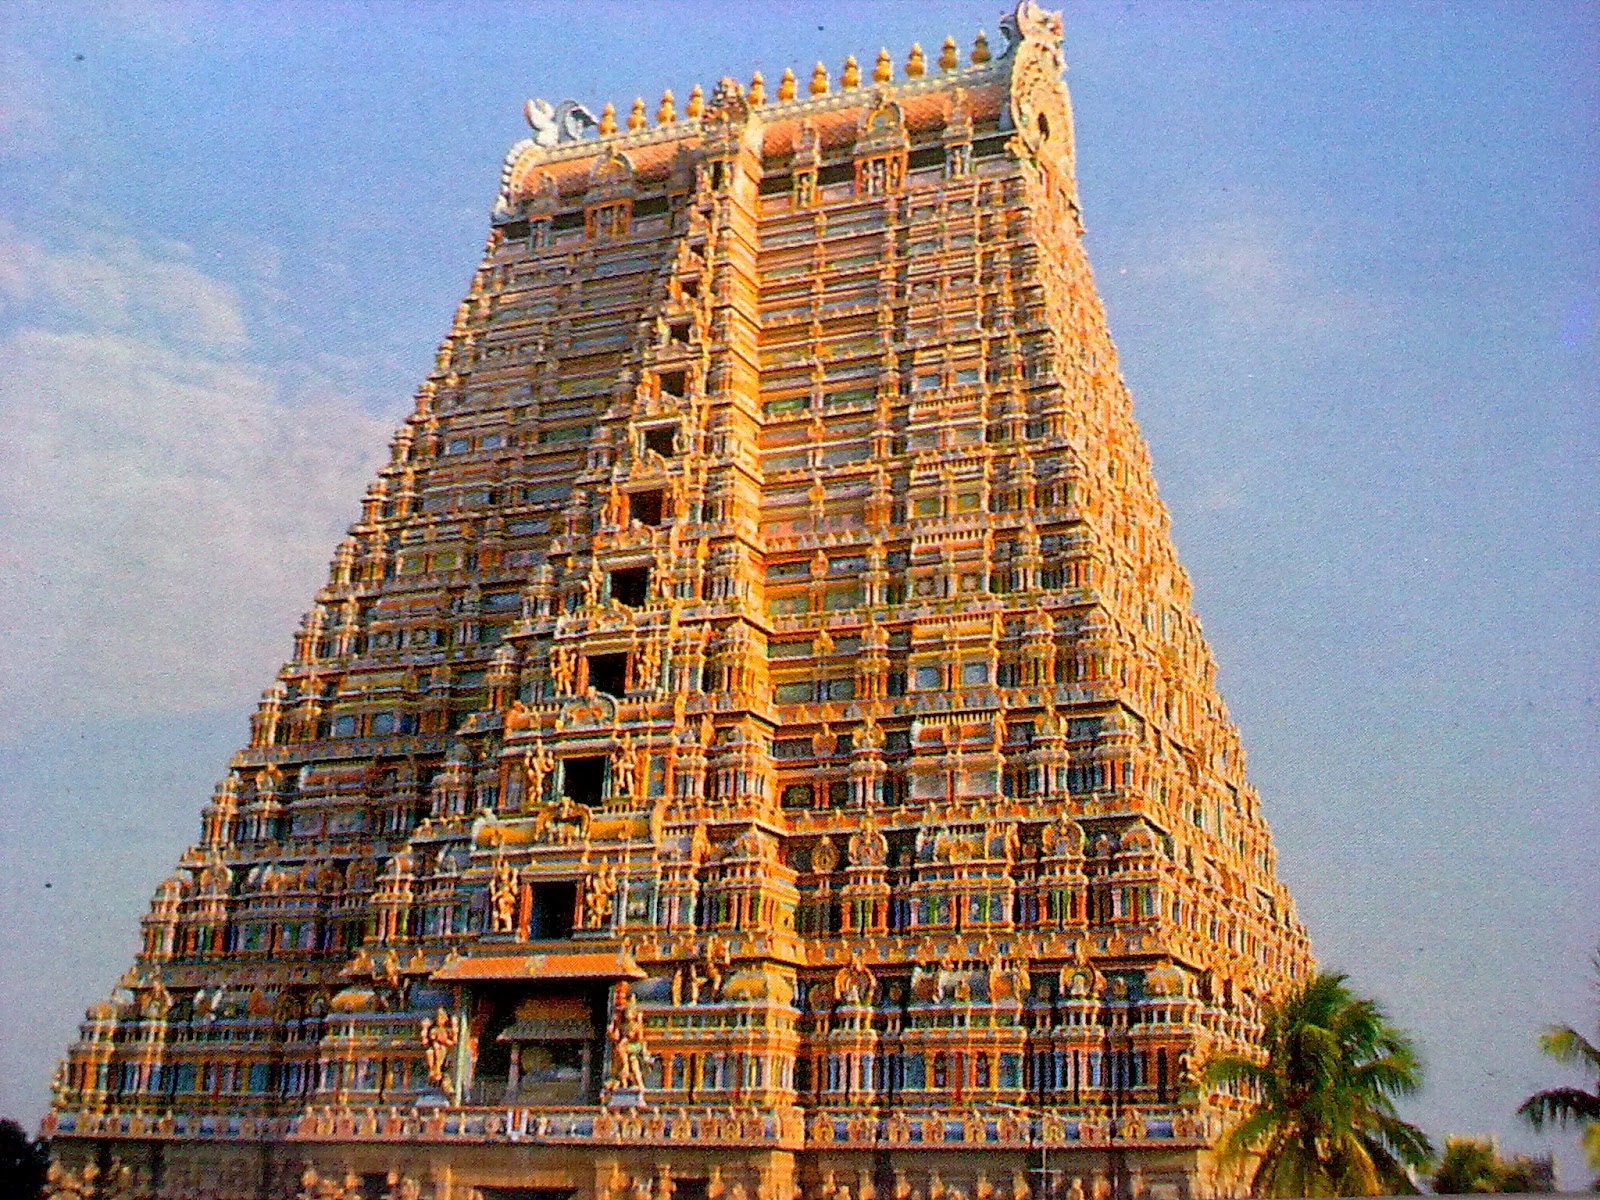 Srirangam Ranganathaswamy Temple Images | Srirangam Temple Photos |  Srirangam Ranganathaswamy Tower Photos | Srirangam Ranganathaswamy Temple  HD Wallpapers Download - Gods Own Web